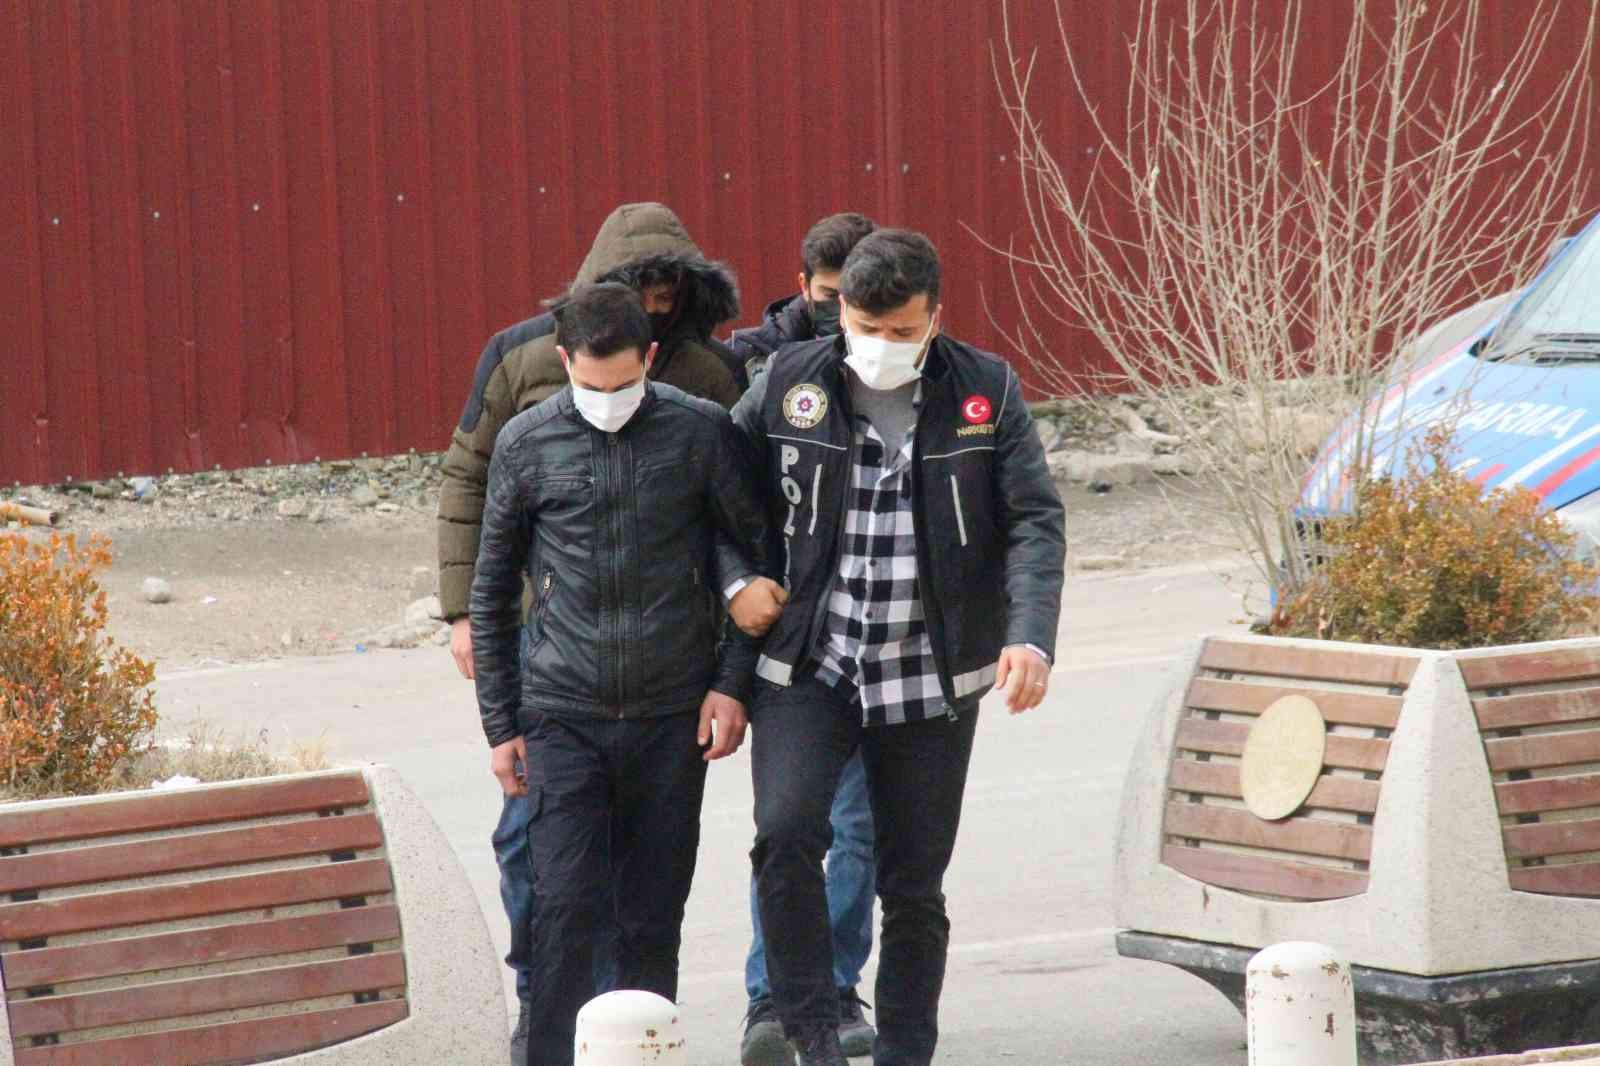 Elazığ’da yeni yılın ilk uyuşturucusu yastık kılıfının içinde yakalandı #elazig